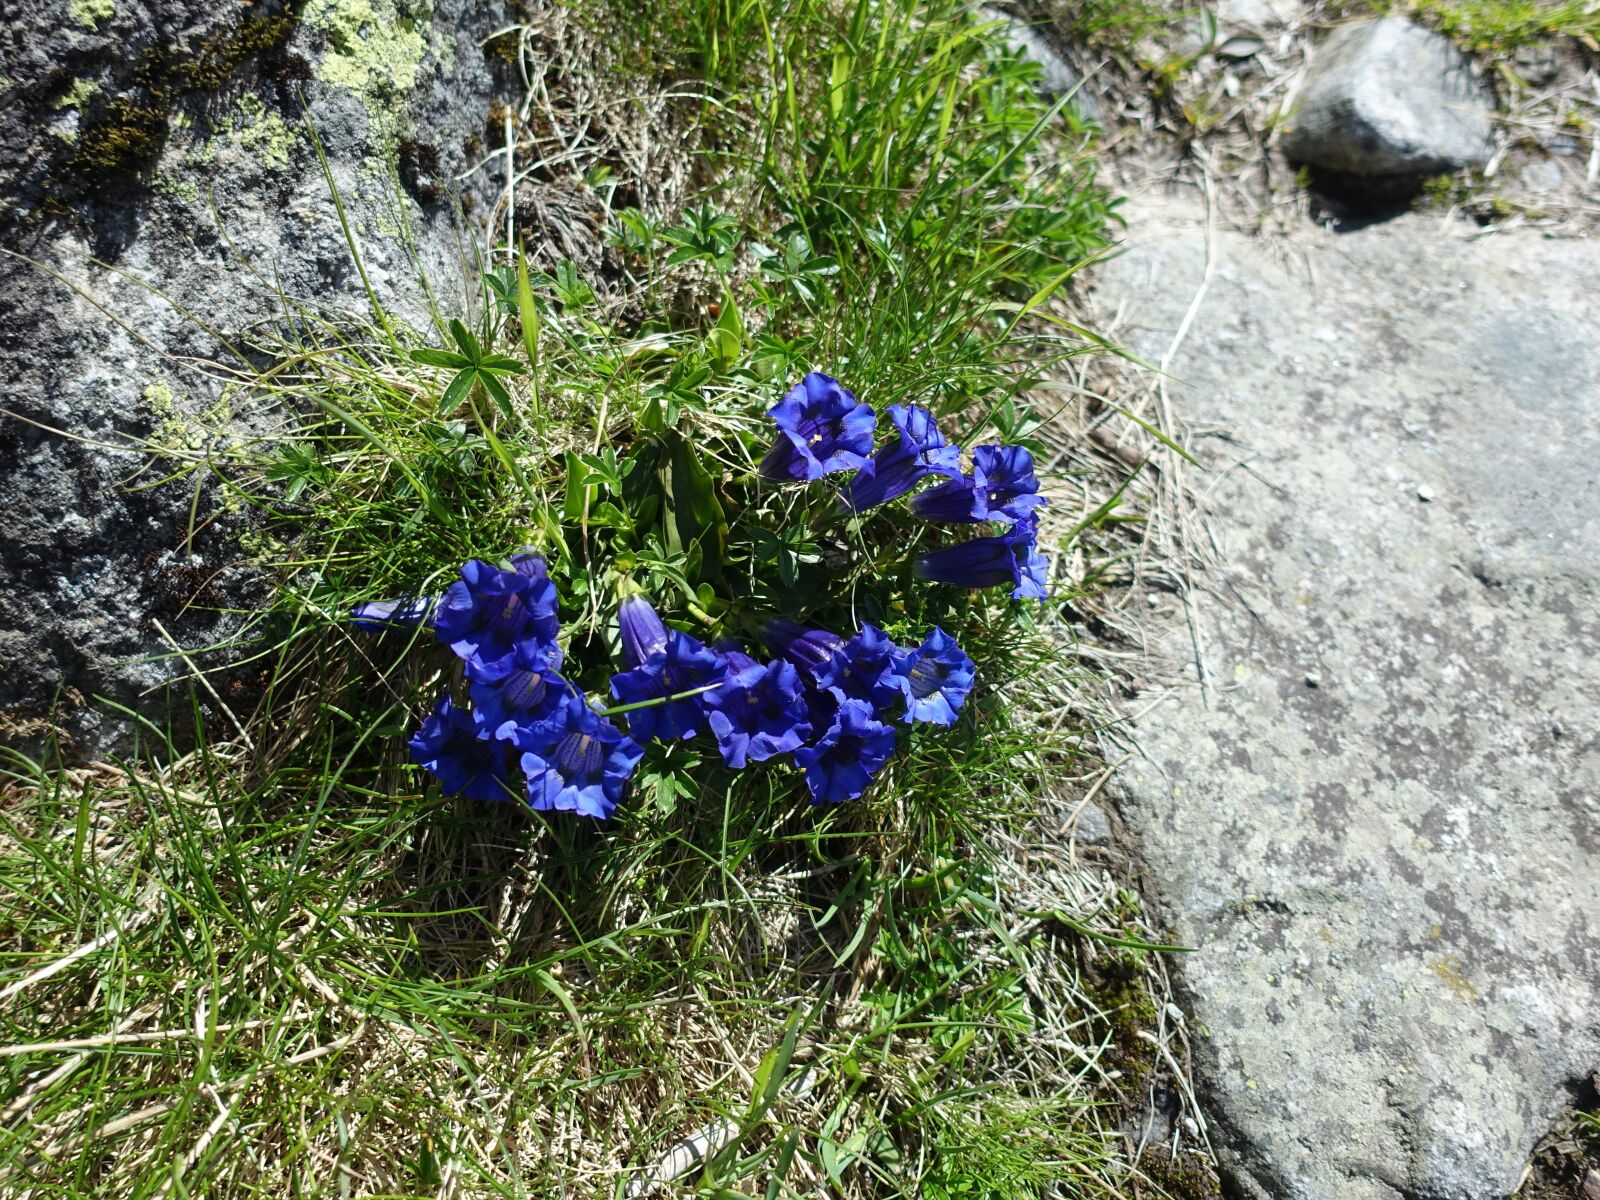 Sony Cyber-shot DSC-RX100 III sample photo. Alpine flower, gentian, blue photography